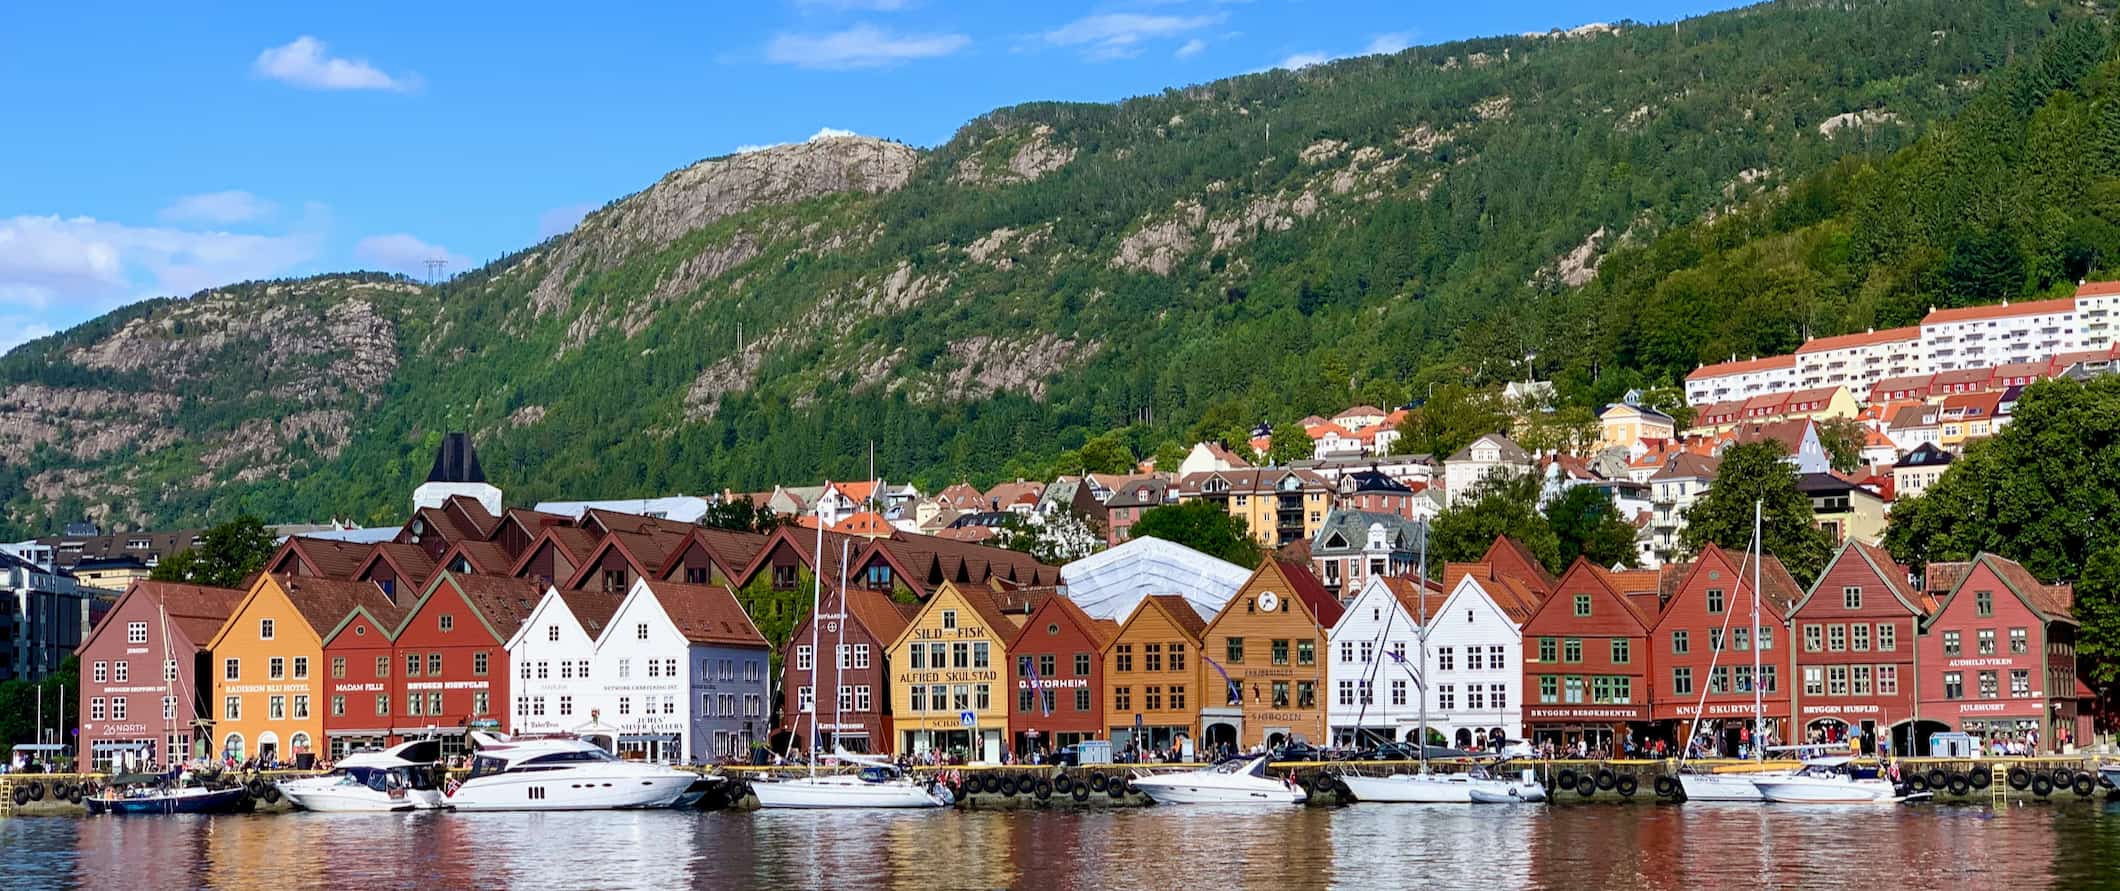 Vários edifícios antigos de colorção mult i-colorida ao longo das margens calmas de Bergen, Noruega